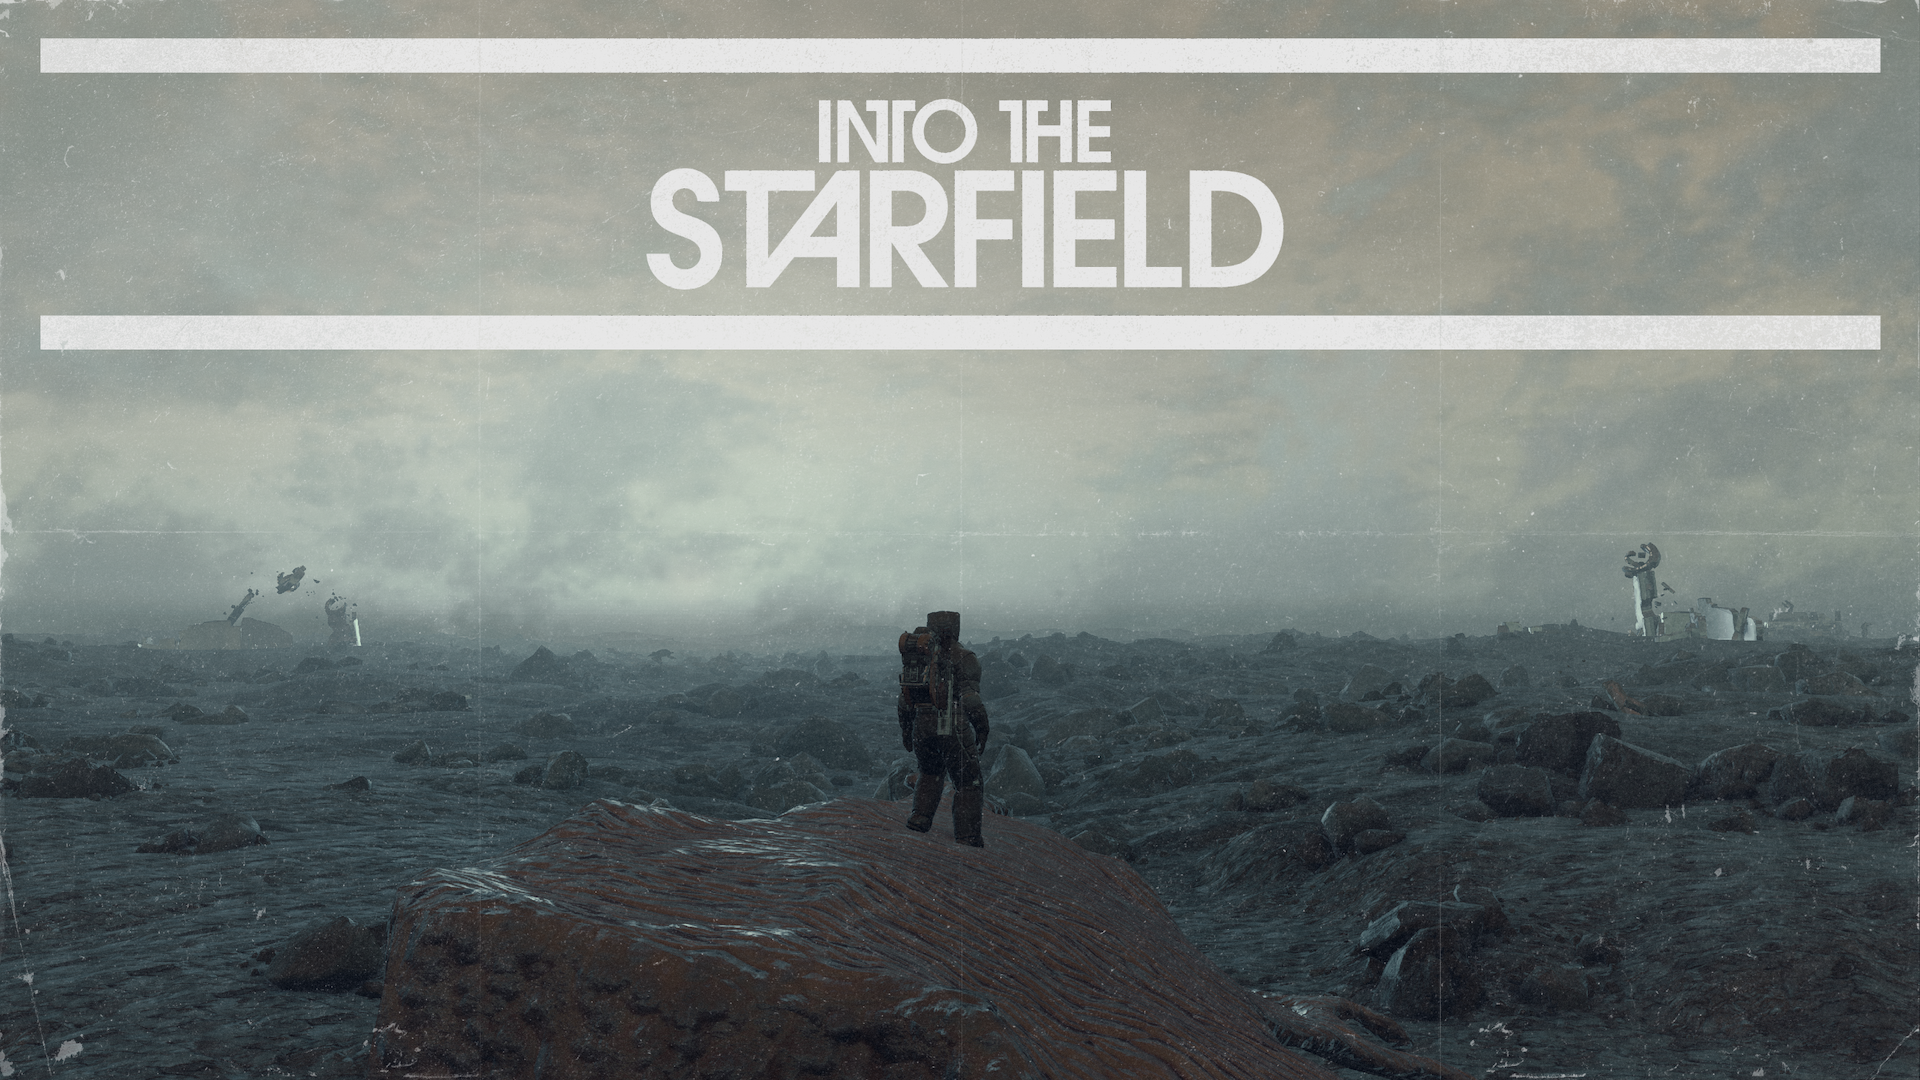 Starfield: novo exclusivo do Xbox terá compras dentro do jogo 